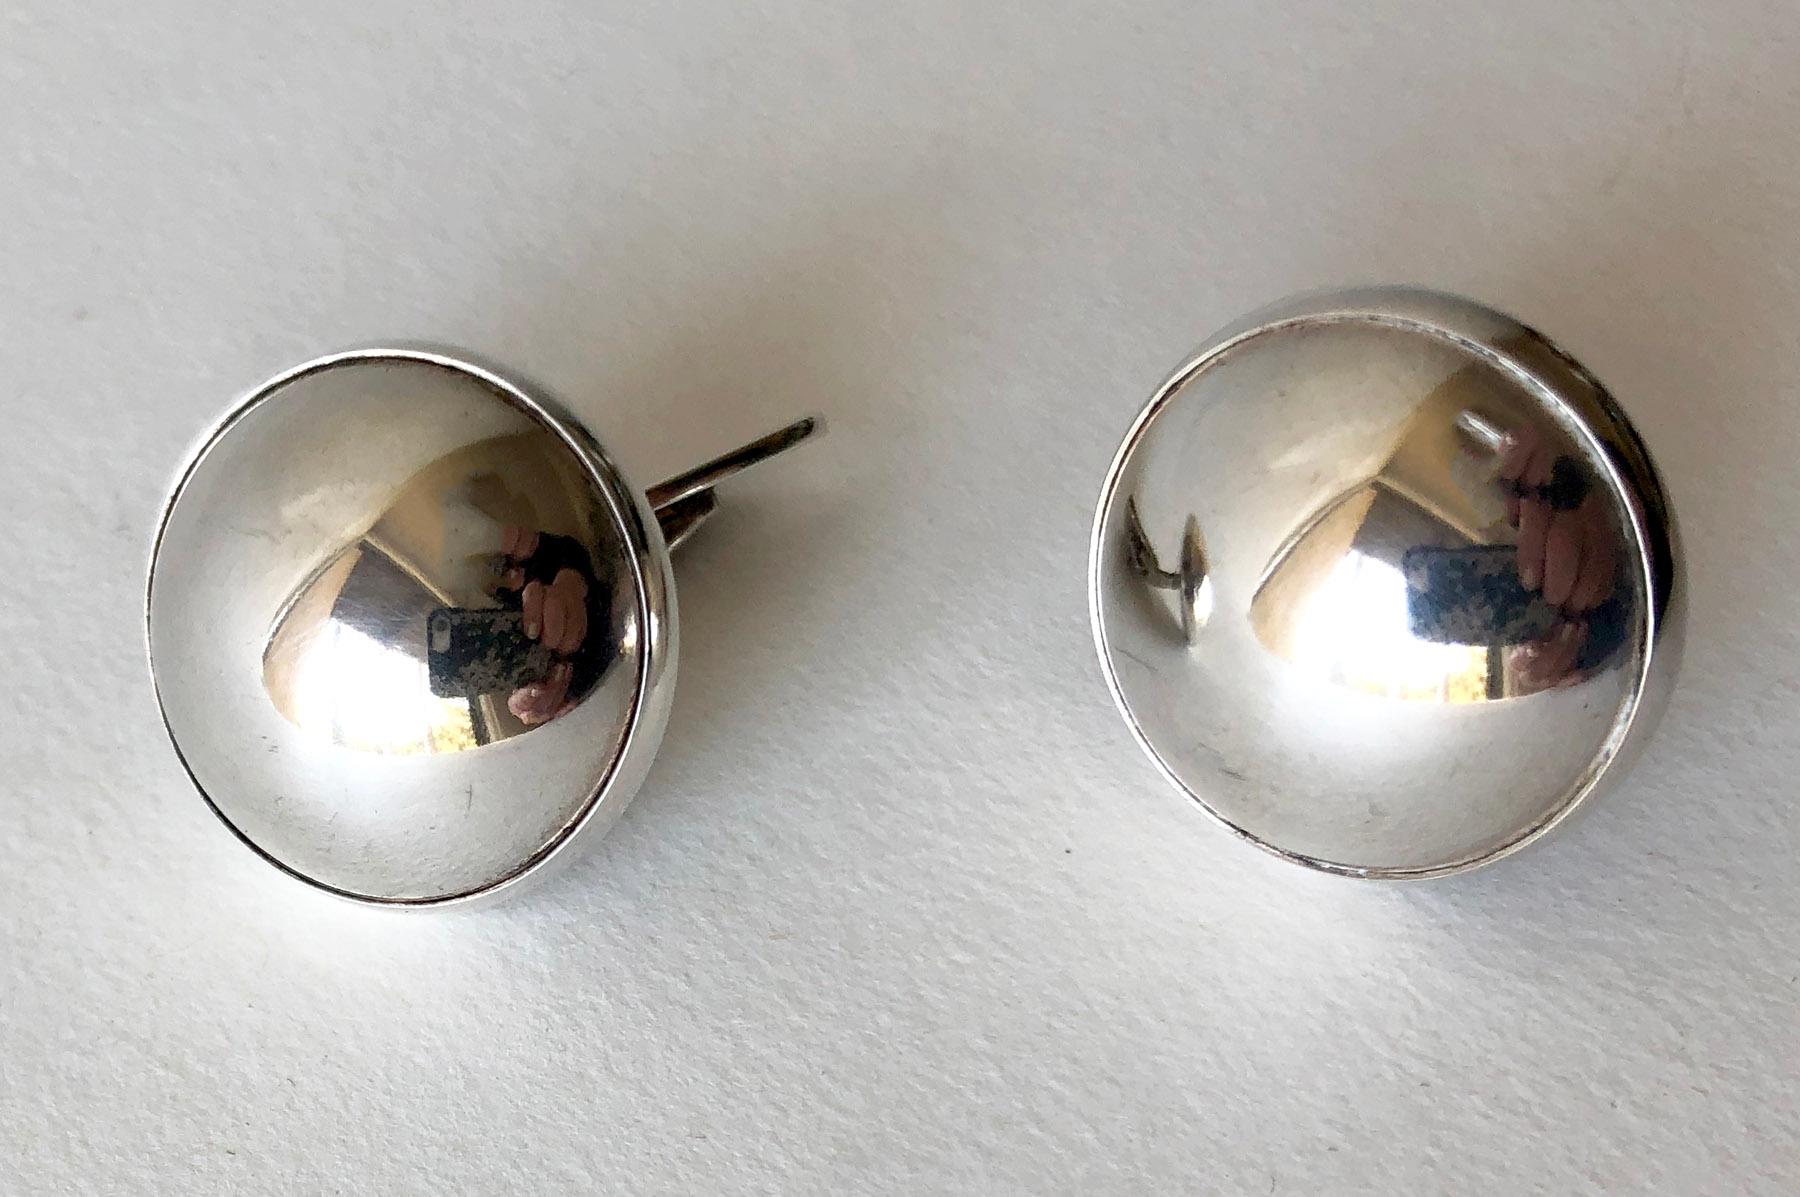 Pair of sterling silver half sphere cufflinks created by Niels Erik From of Denmark.  Cufflinks measure 1